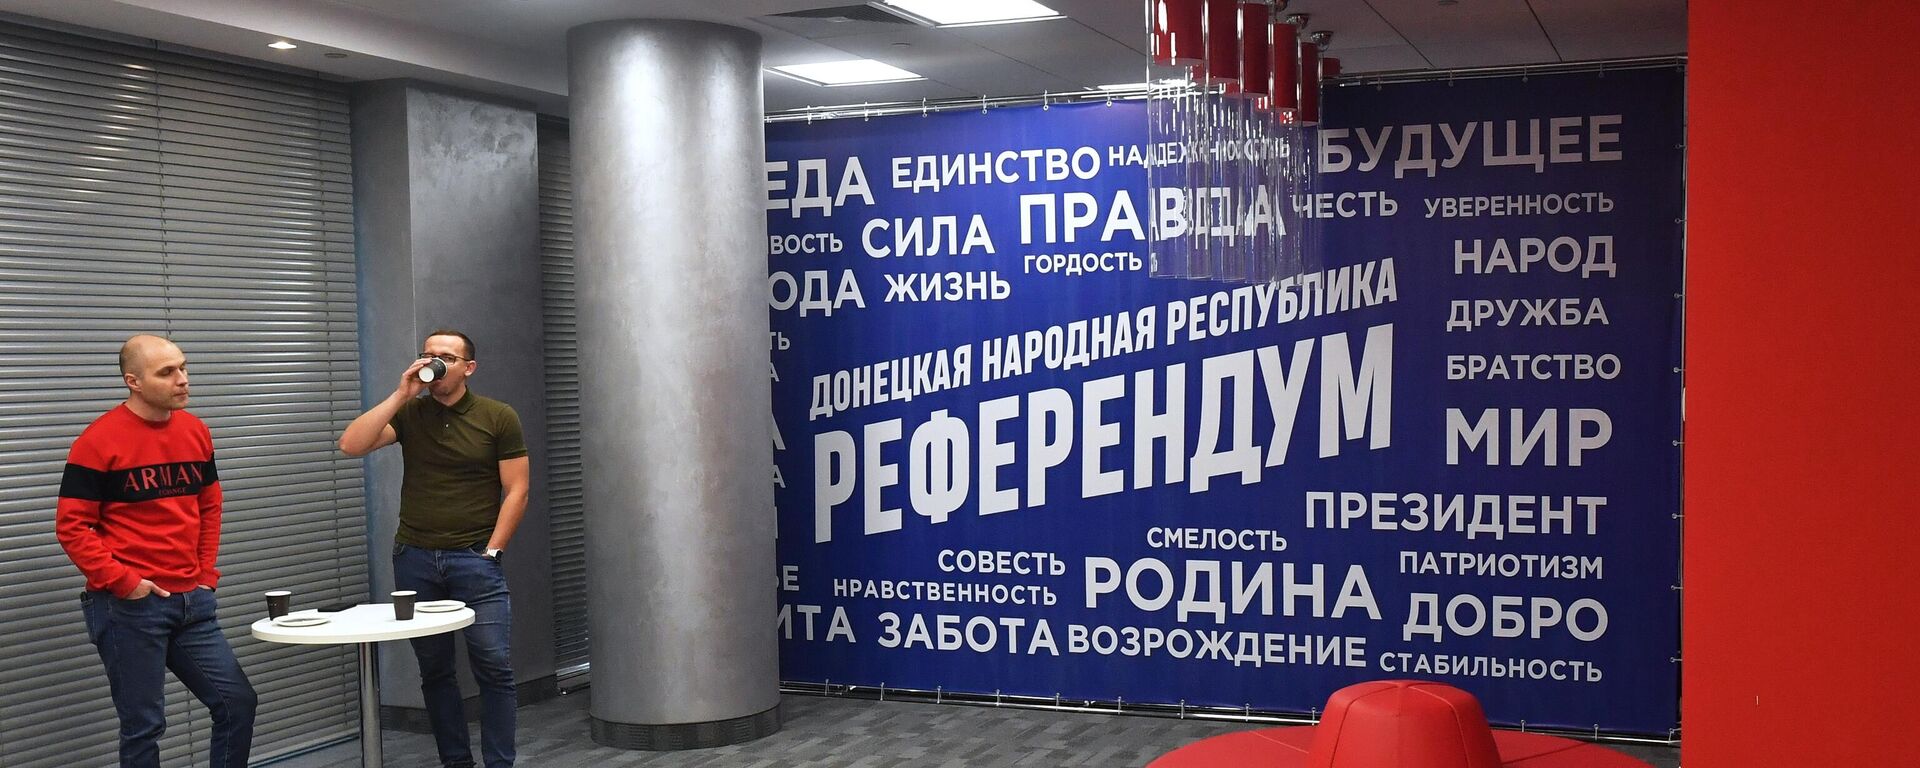 Centro de mídia em Donetsk, que cobre a realização de referendo sobre a adesão da República Popular de Donetsk à Federação da Rússia, foto publicada em 23 de setembro de 2022 - Sputnik Brasil, 1920, 23.09.2022